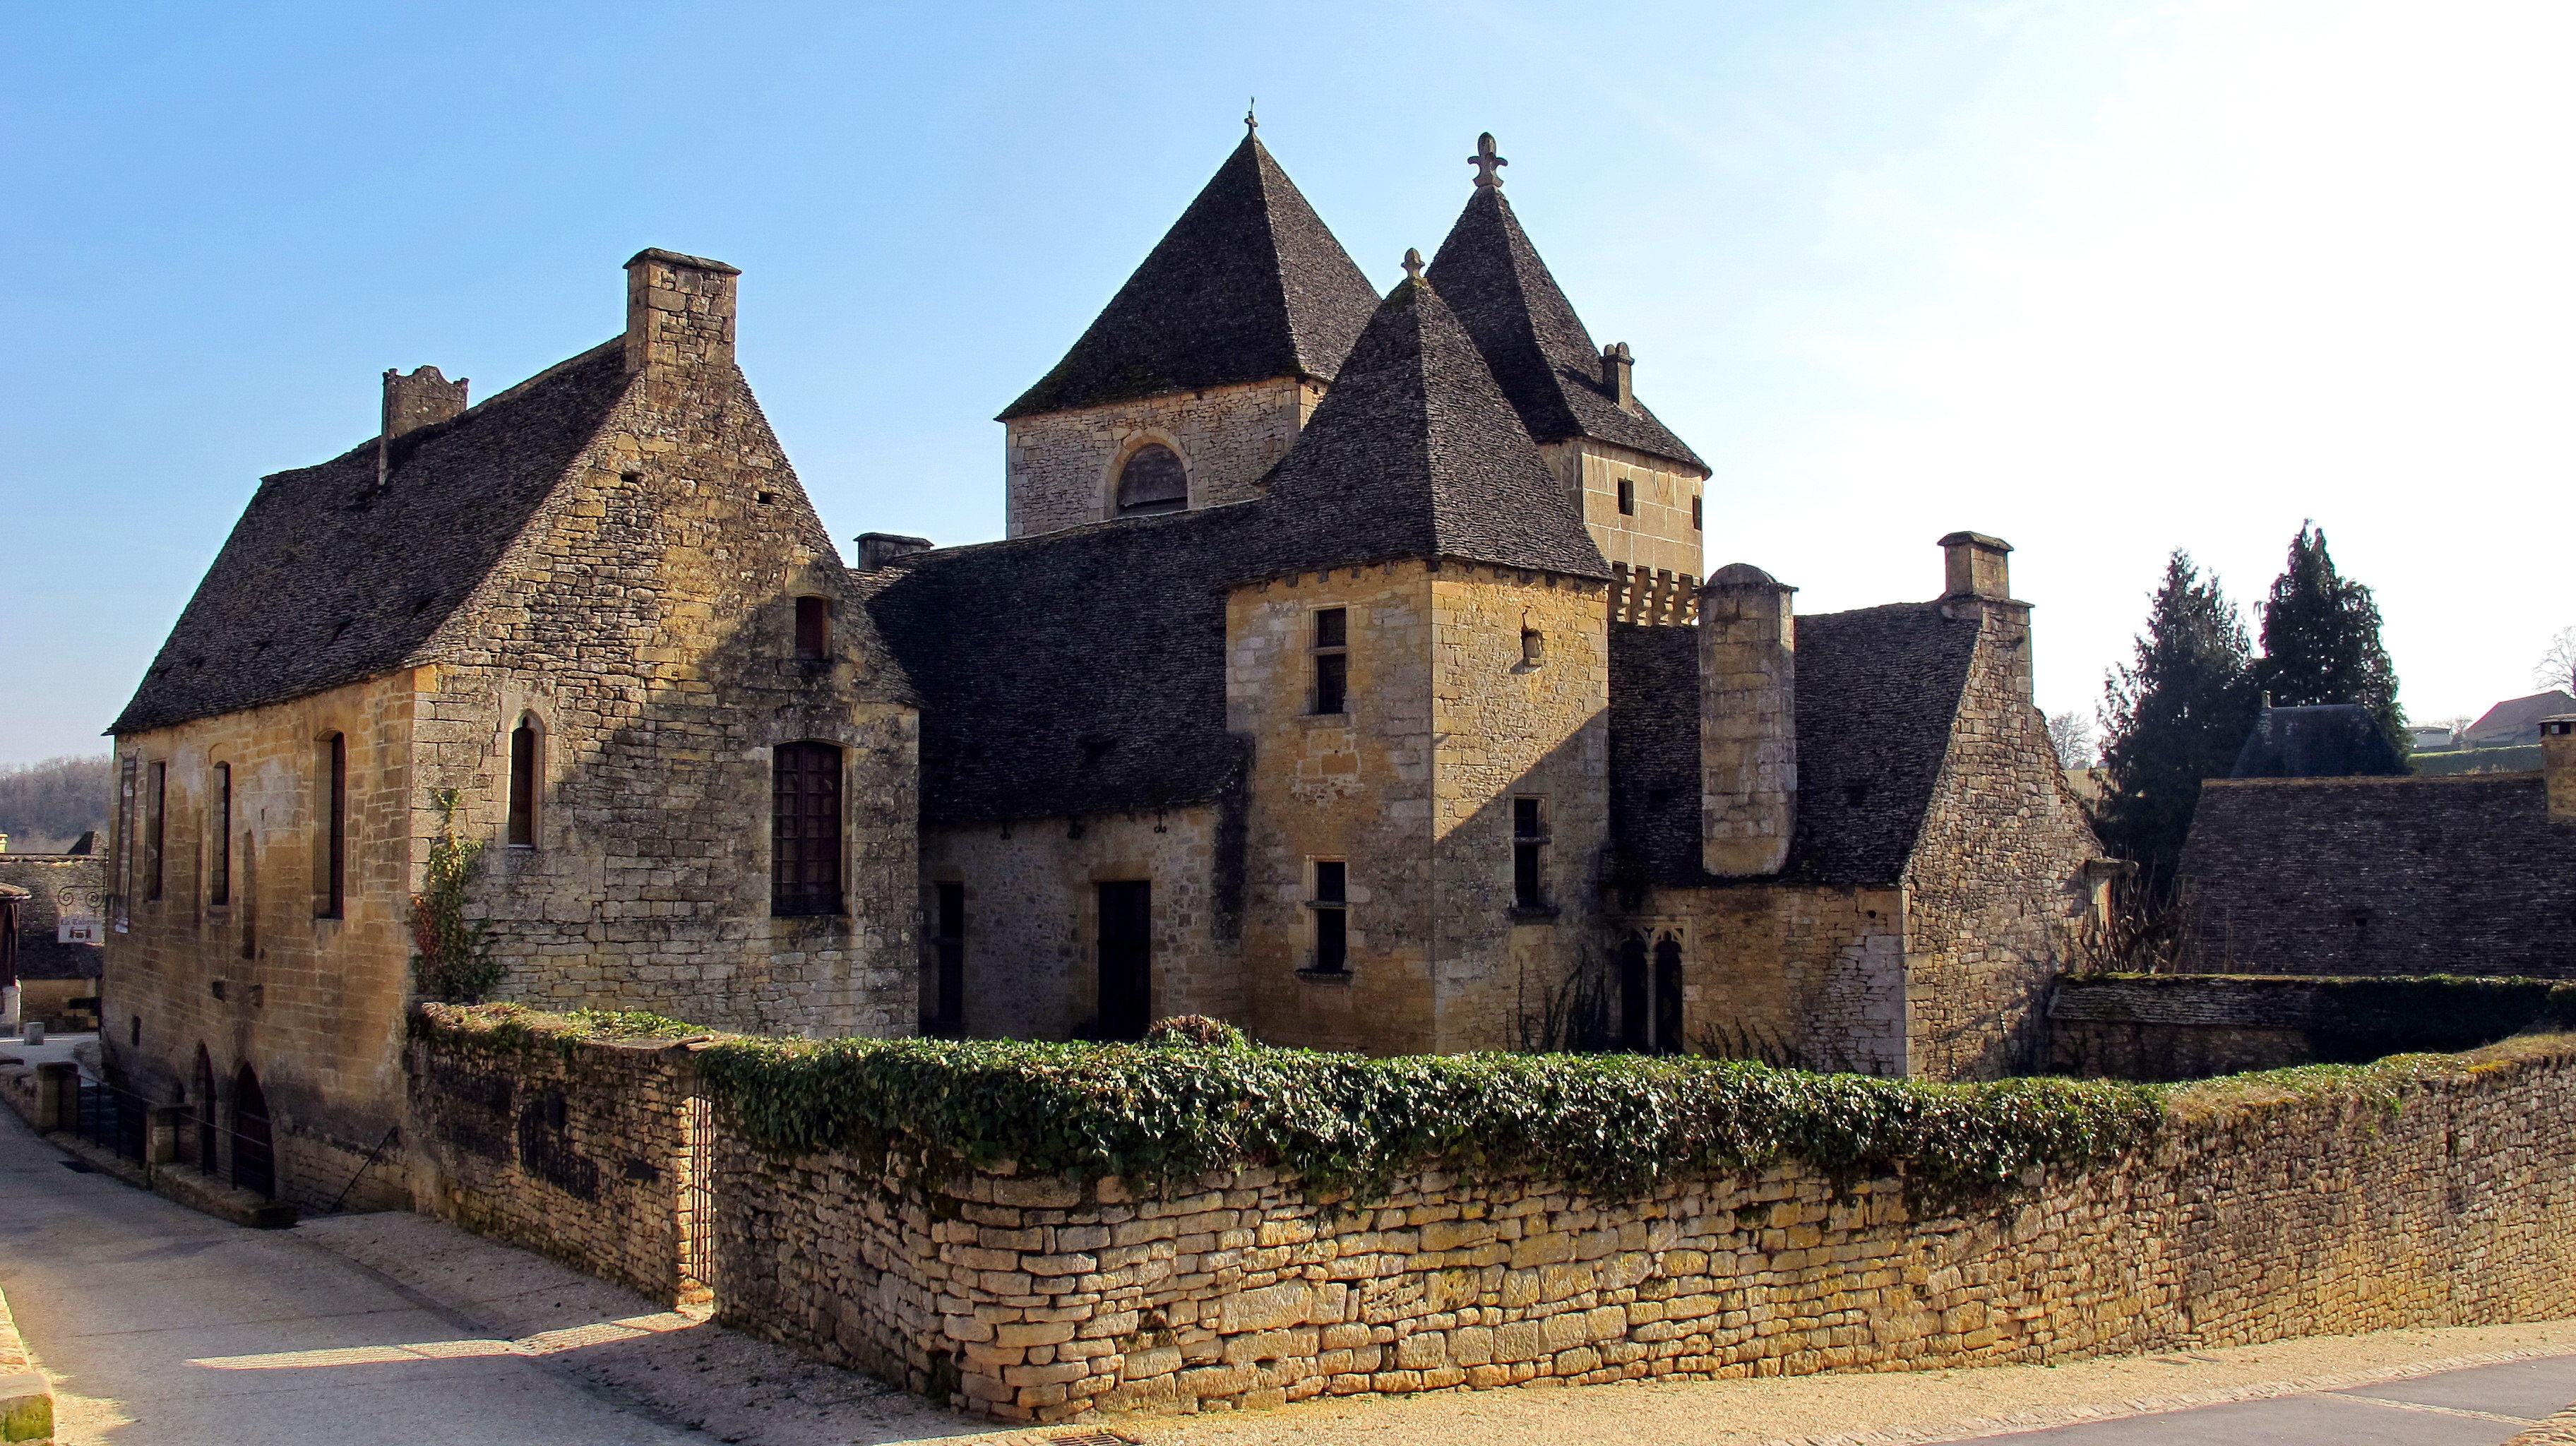 St-Amand de Coly, le village